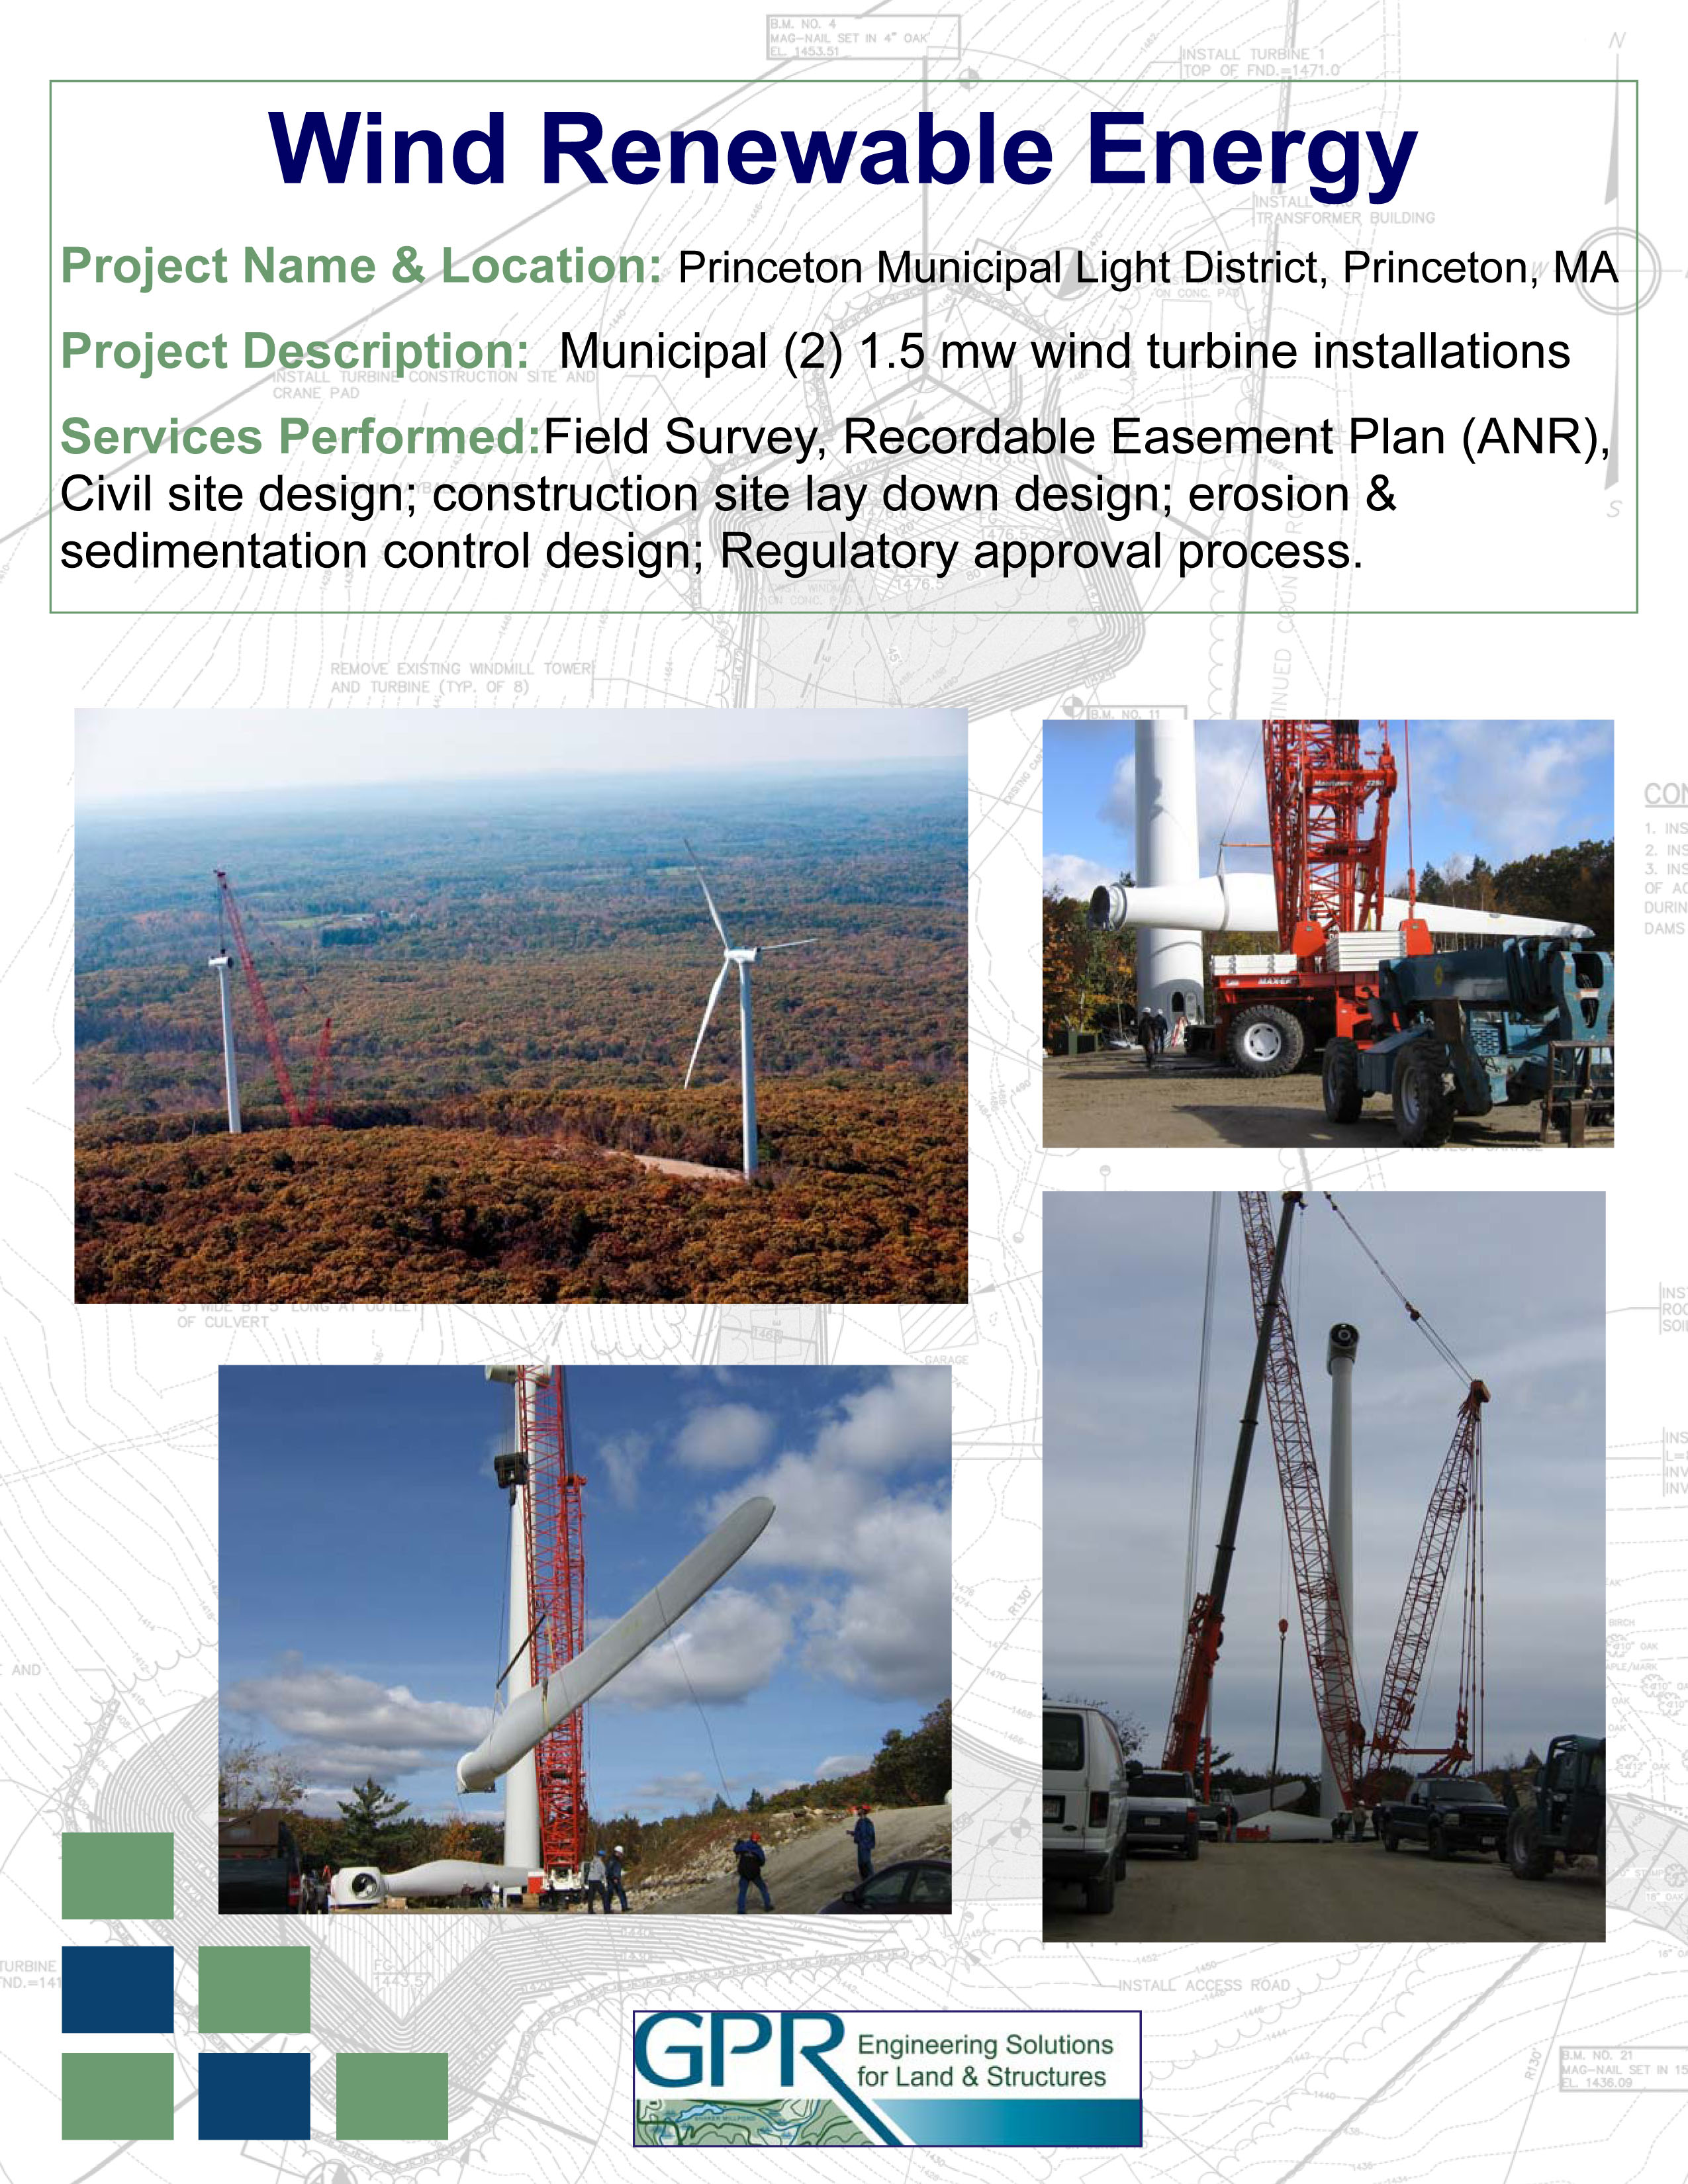 Wind Renewable Energy - 03162